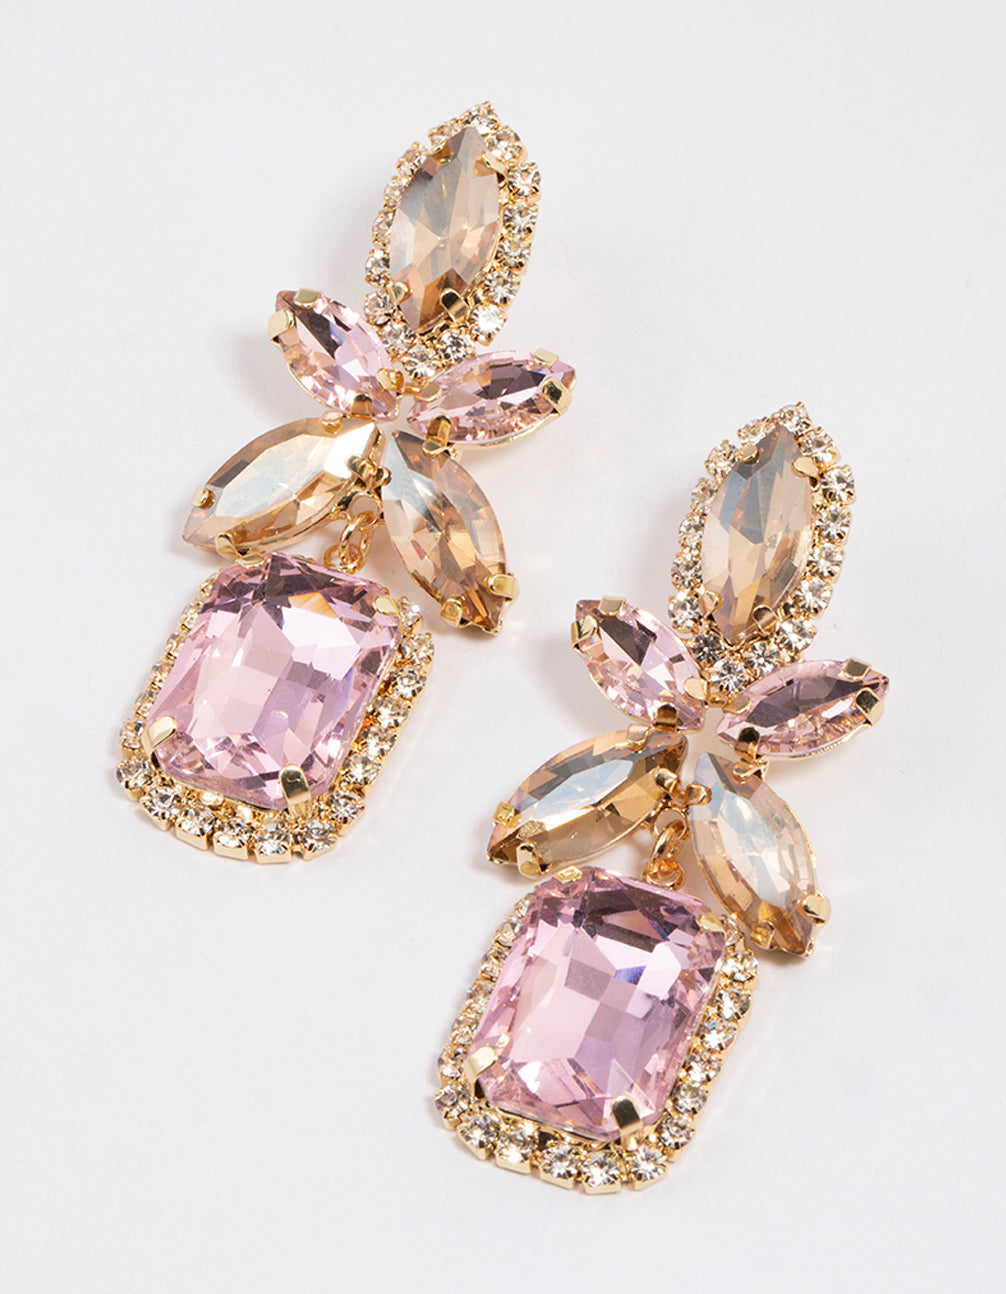 Earrings | Wedding earrings | Drop & dangle earrings | Going out earrings |  Party earrings – Valentina-Rose